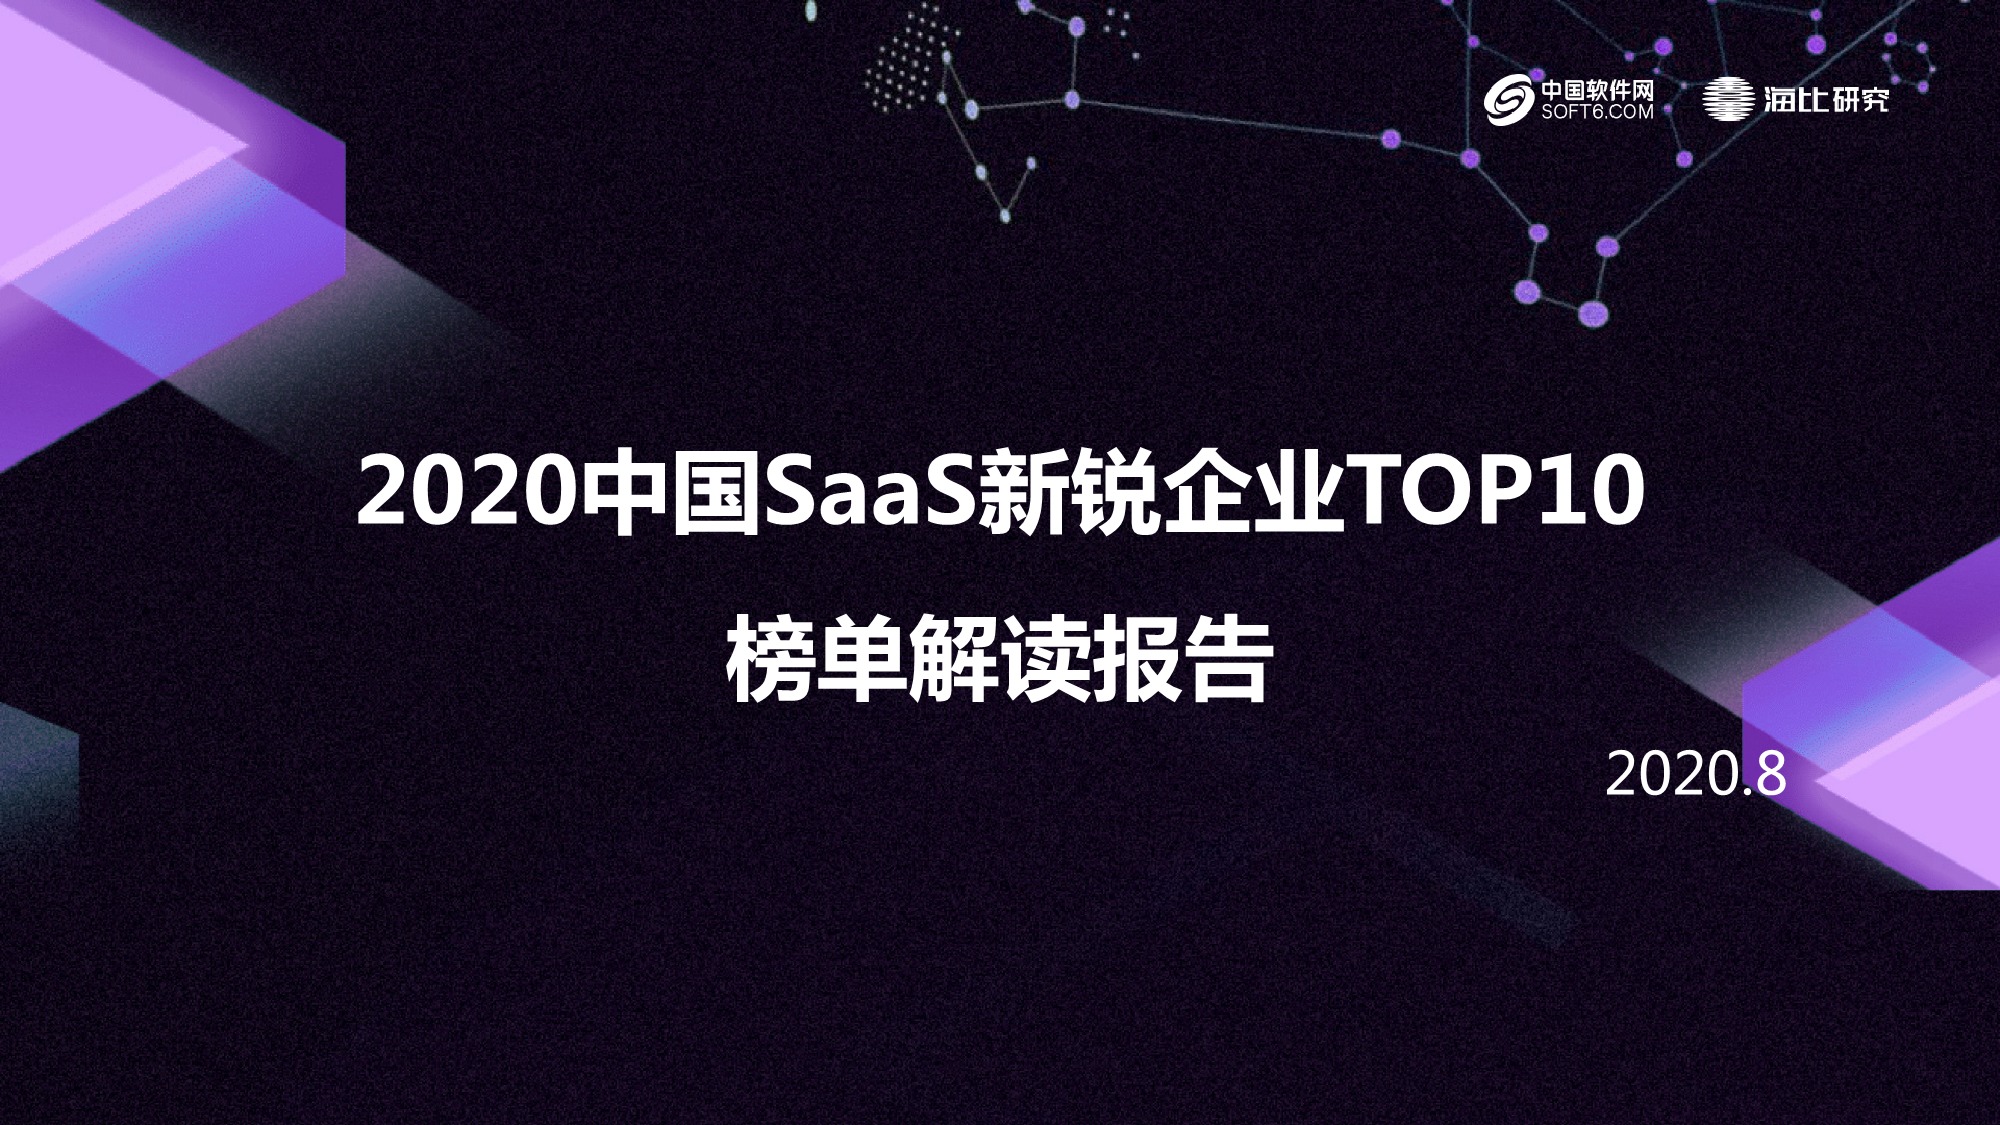 2020中国SaaS新锐企业TOP10榜单解读报告